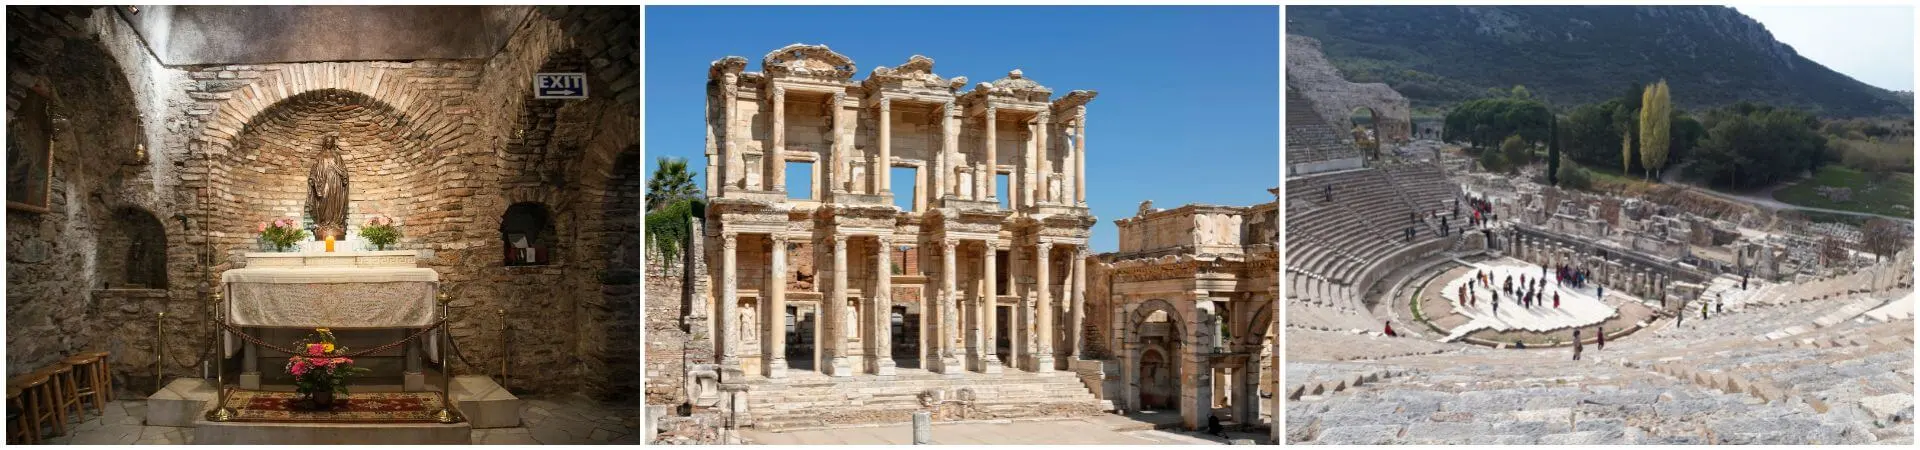 Obilazak Efeza i kuće Djevice Marije iz Istanbula (s popustom)